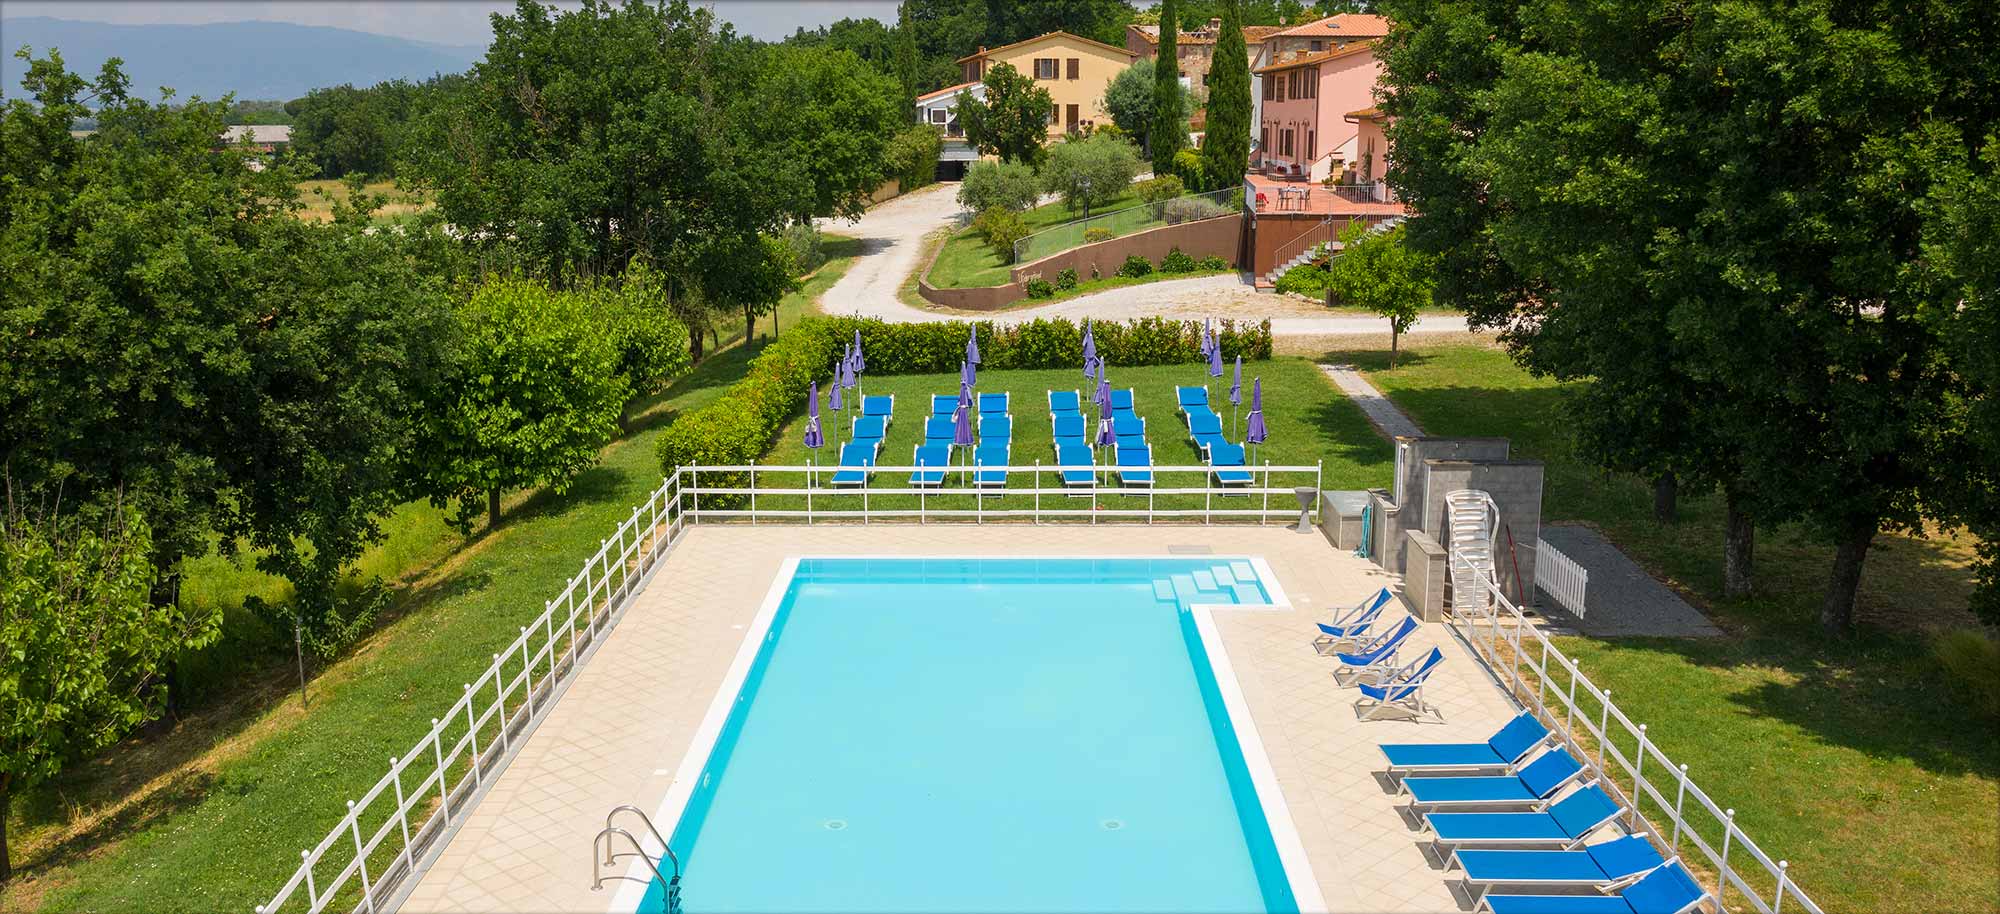 Corte Tommasi - Residence turistico - Appartamenti vacanze con piscina in Toscana